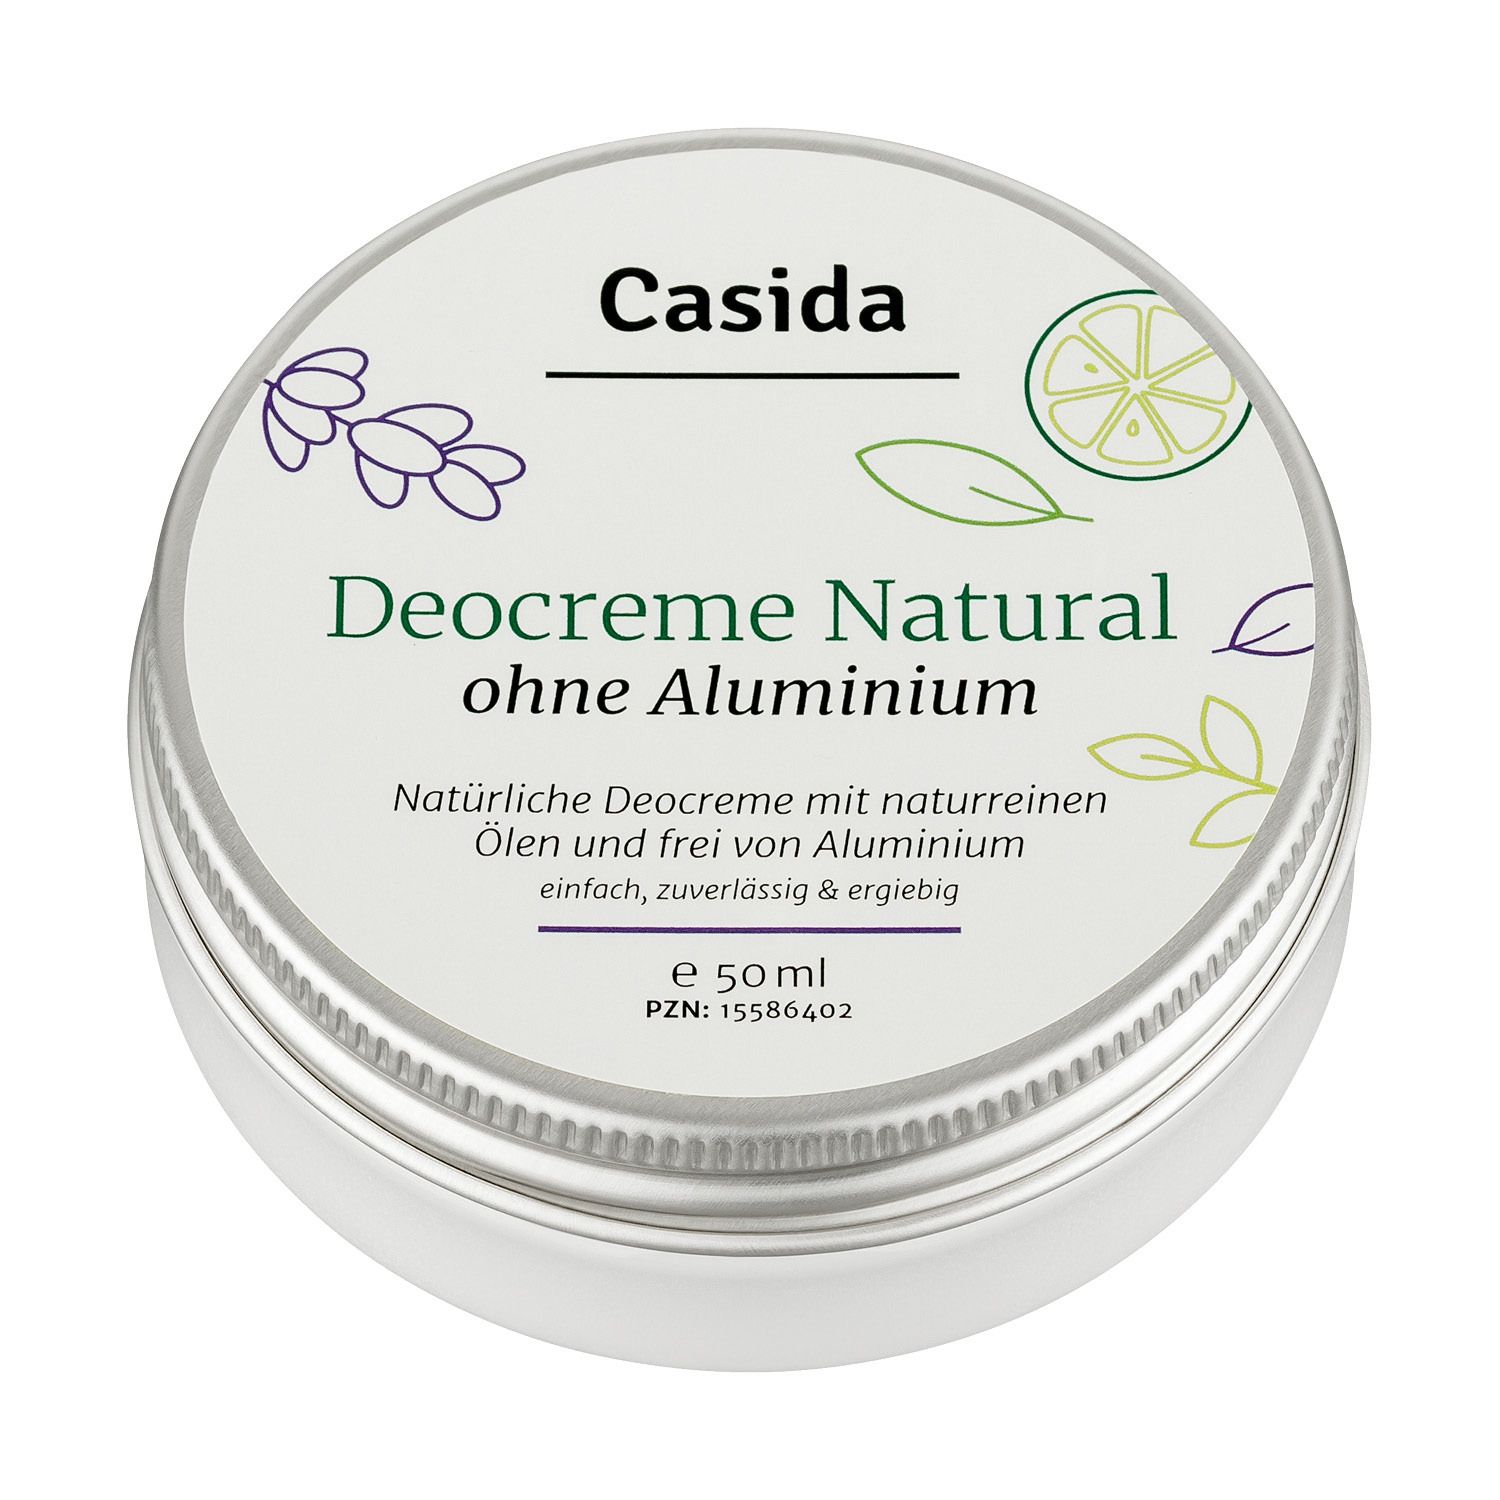 Image of Casida Deocreme Natural ohne Aluminium